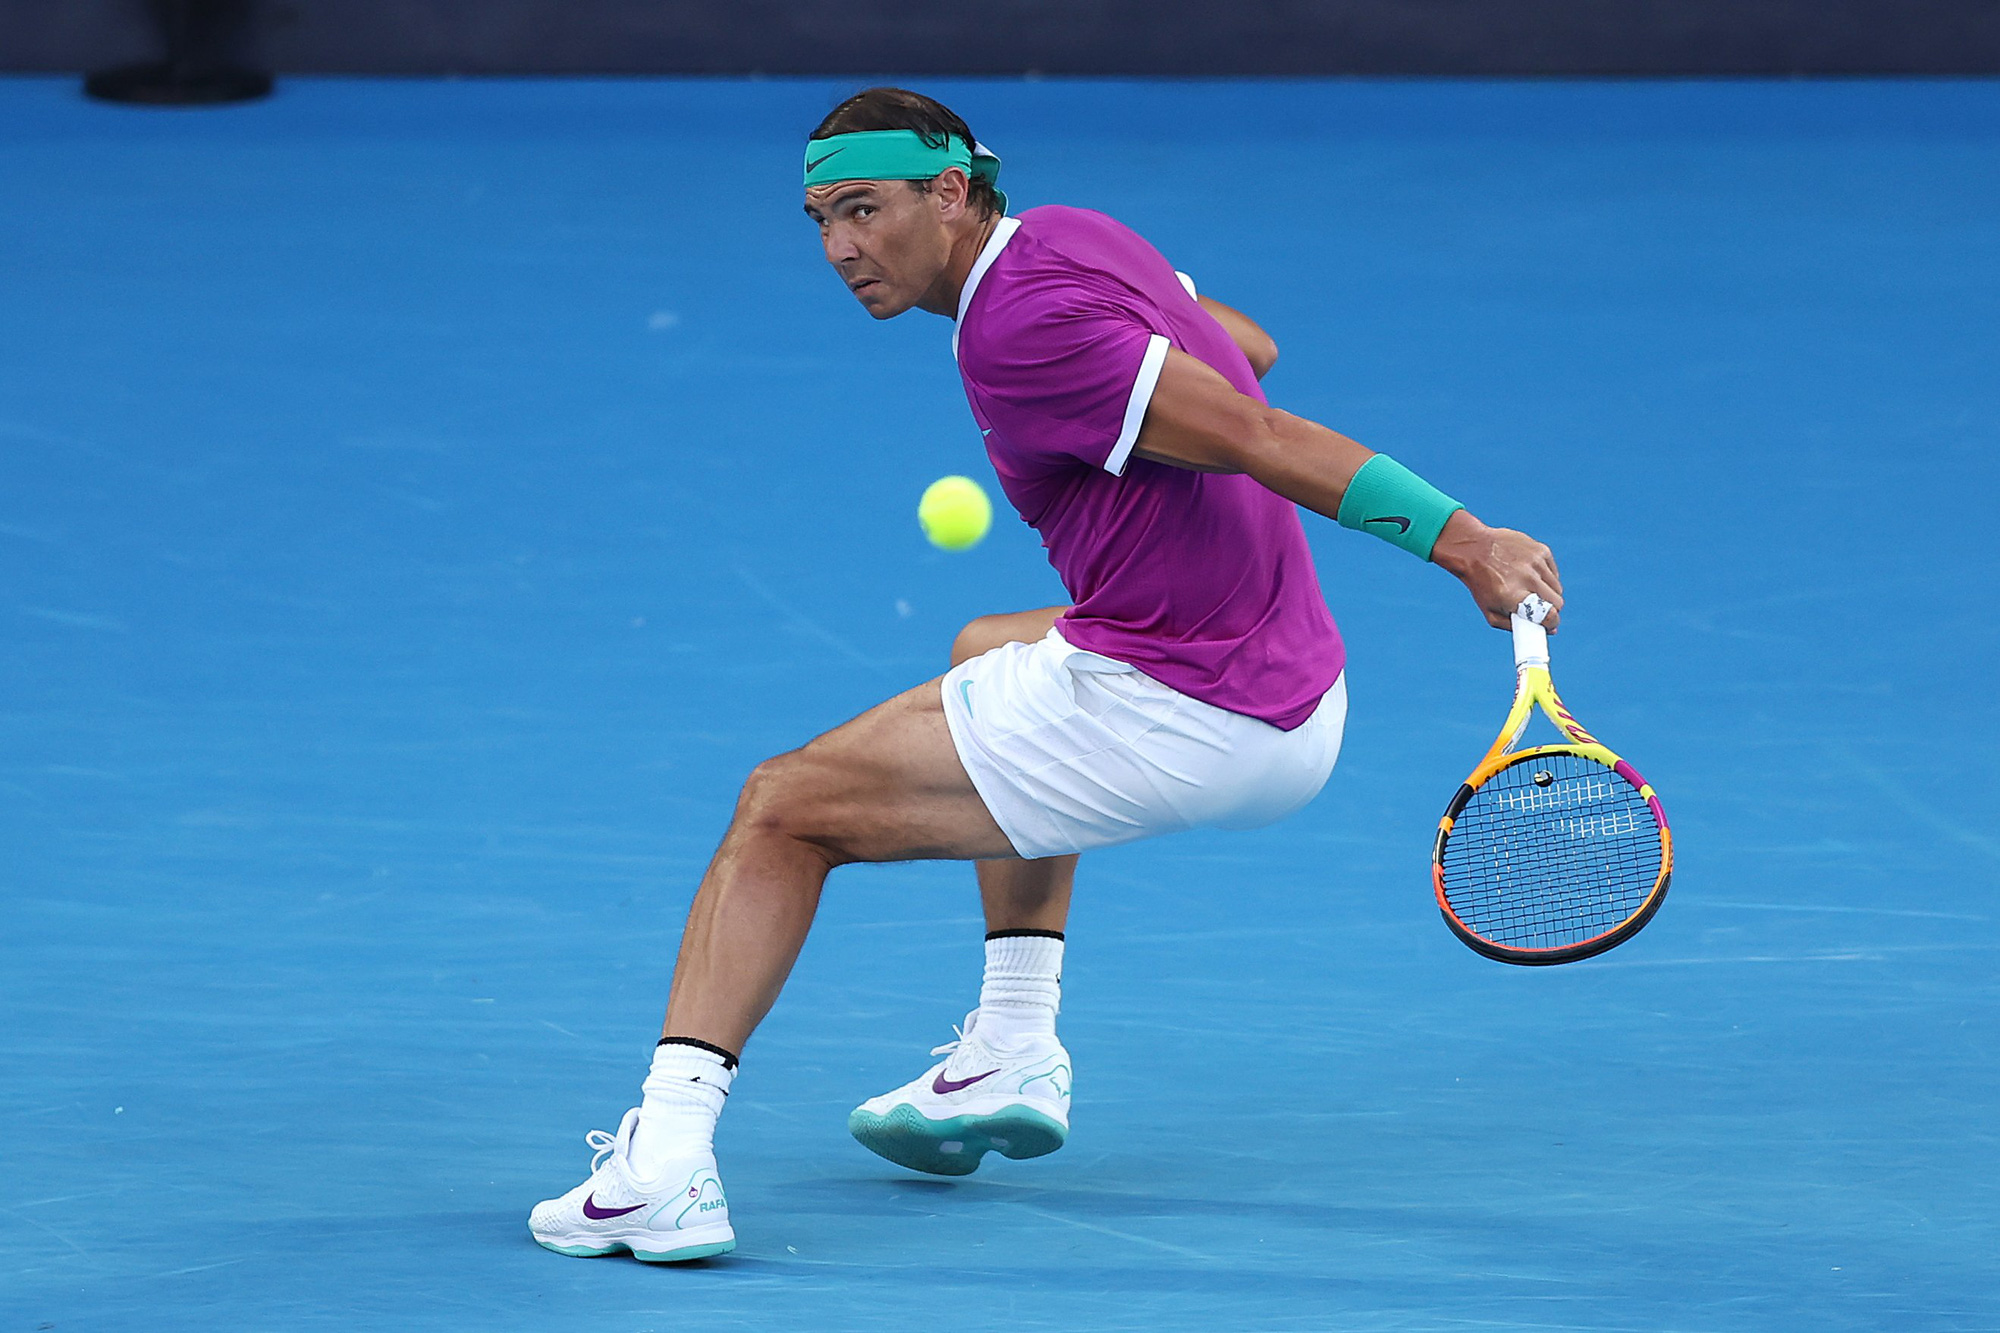 Rafael Nadal gục ngã trước cơ hội trở thành tay vợt vĩ đại nhất - Ảnh 1.